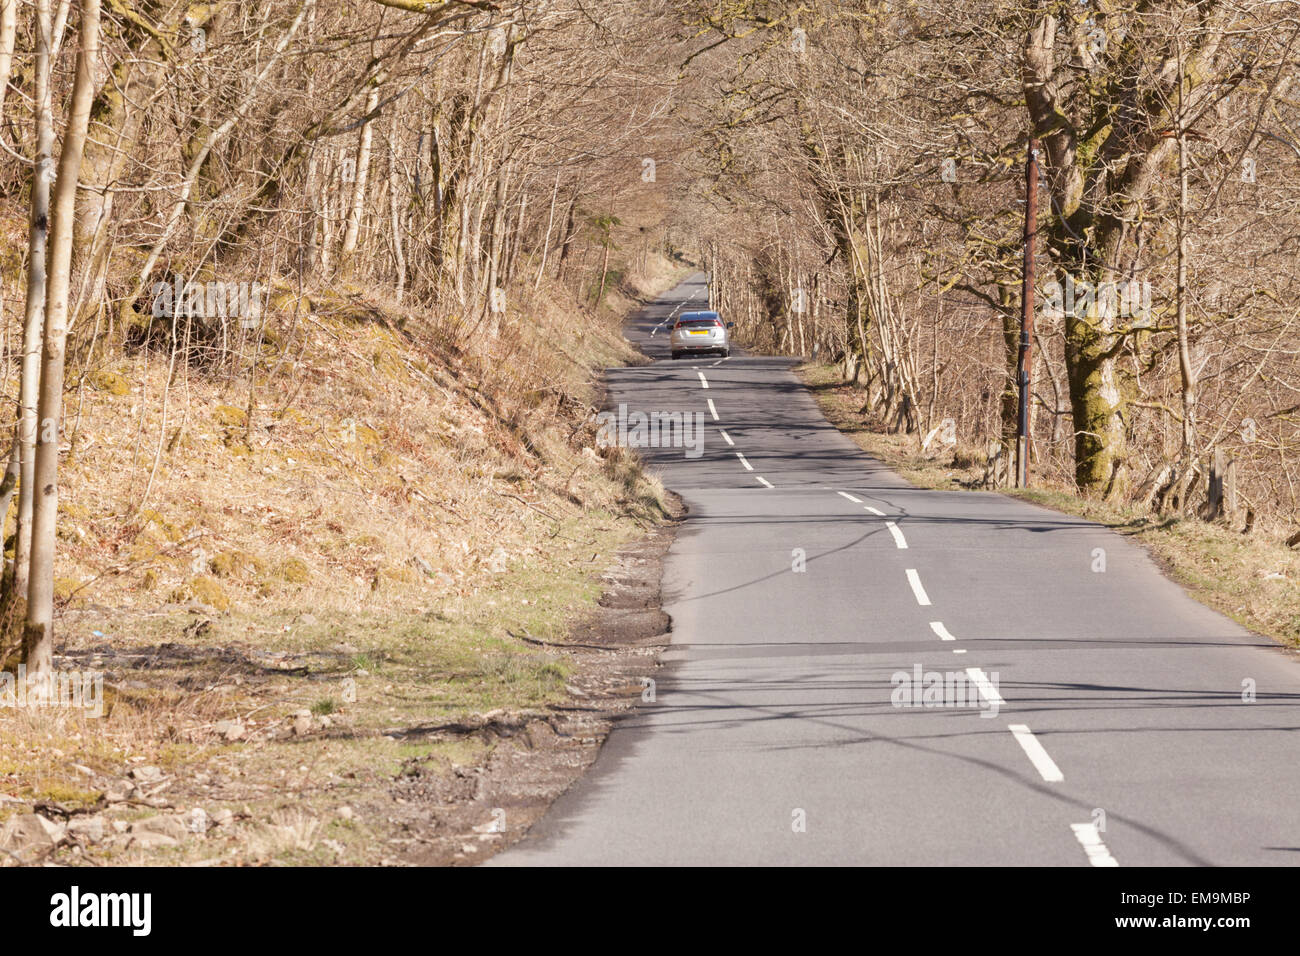 Route calme solitaire dans les basses terres de l'écosse avec une voiture au loin, uk Banque D'Images